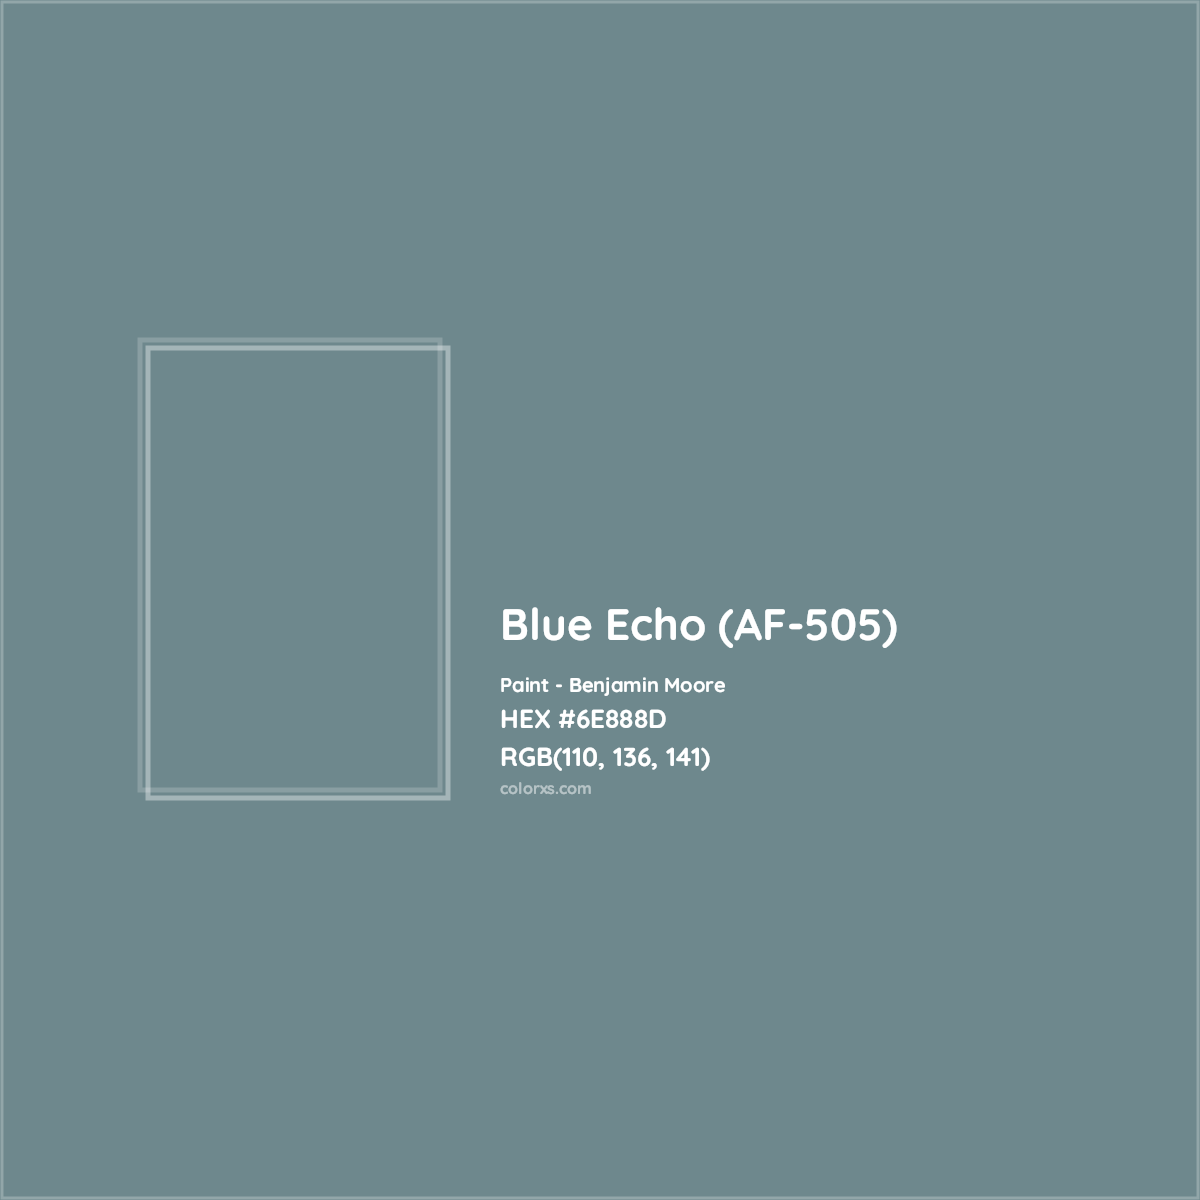 HEX #6E888D Blue Echo (AF-505) Paint Benjamin Moore - Color Code